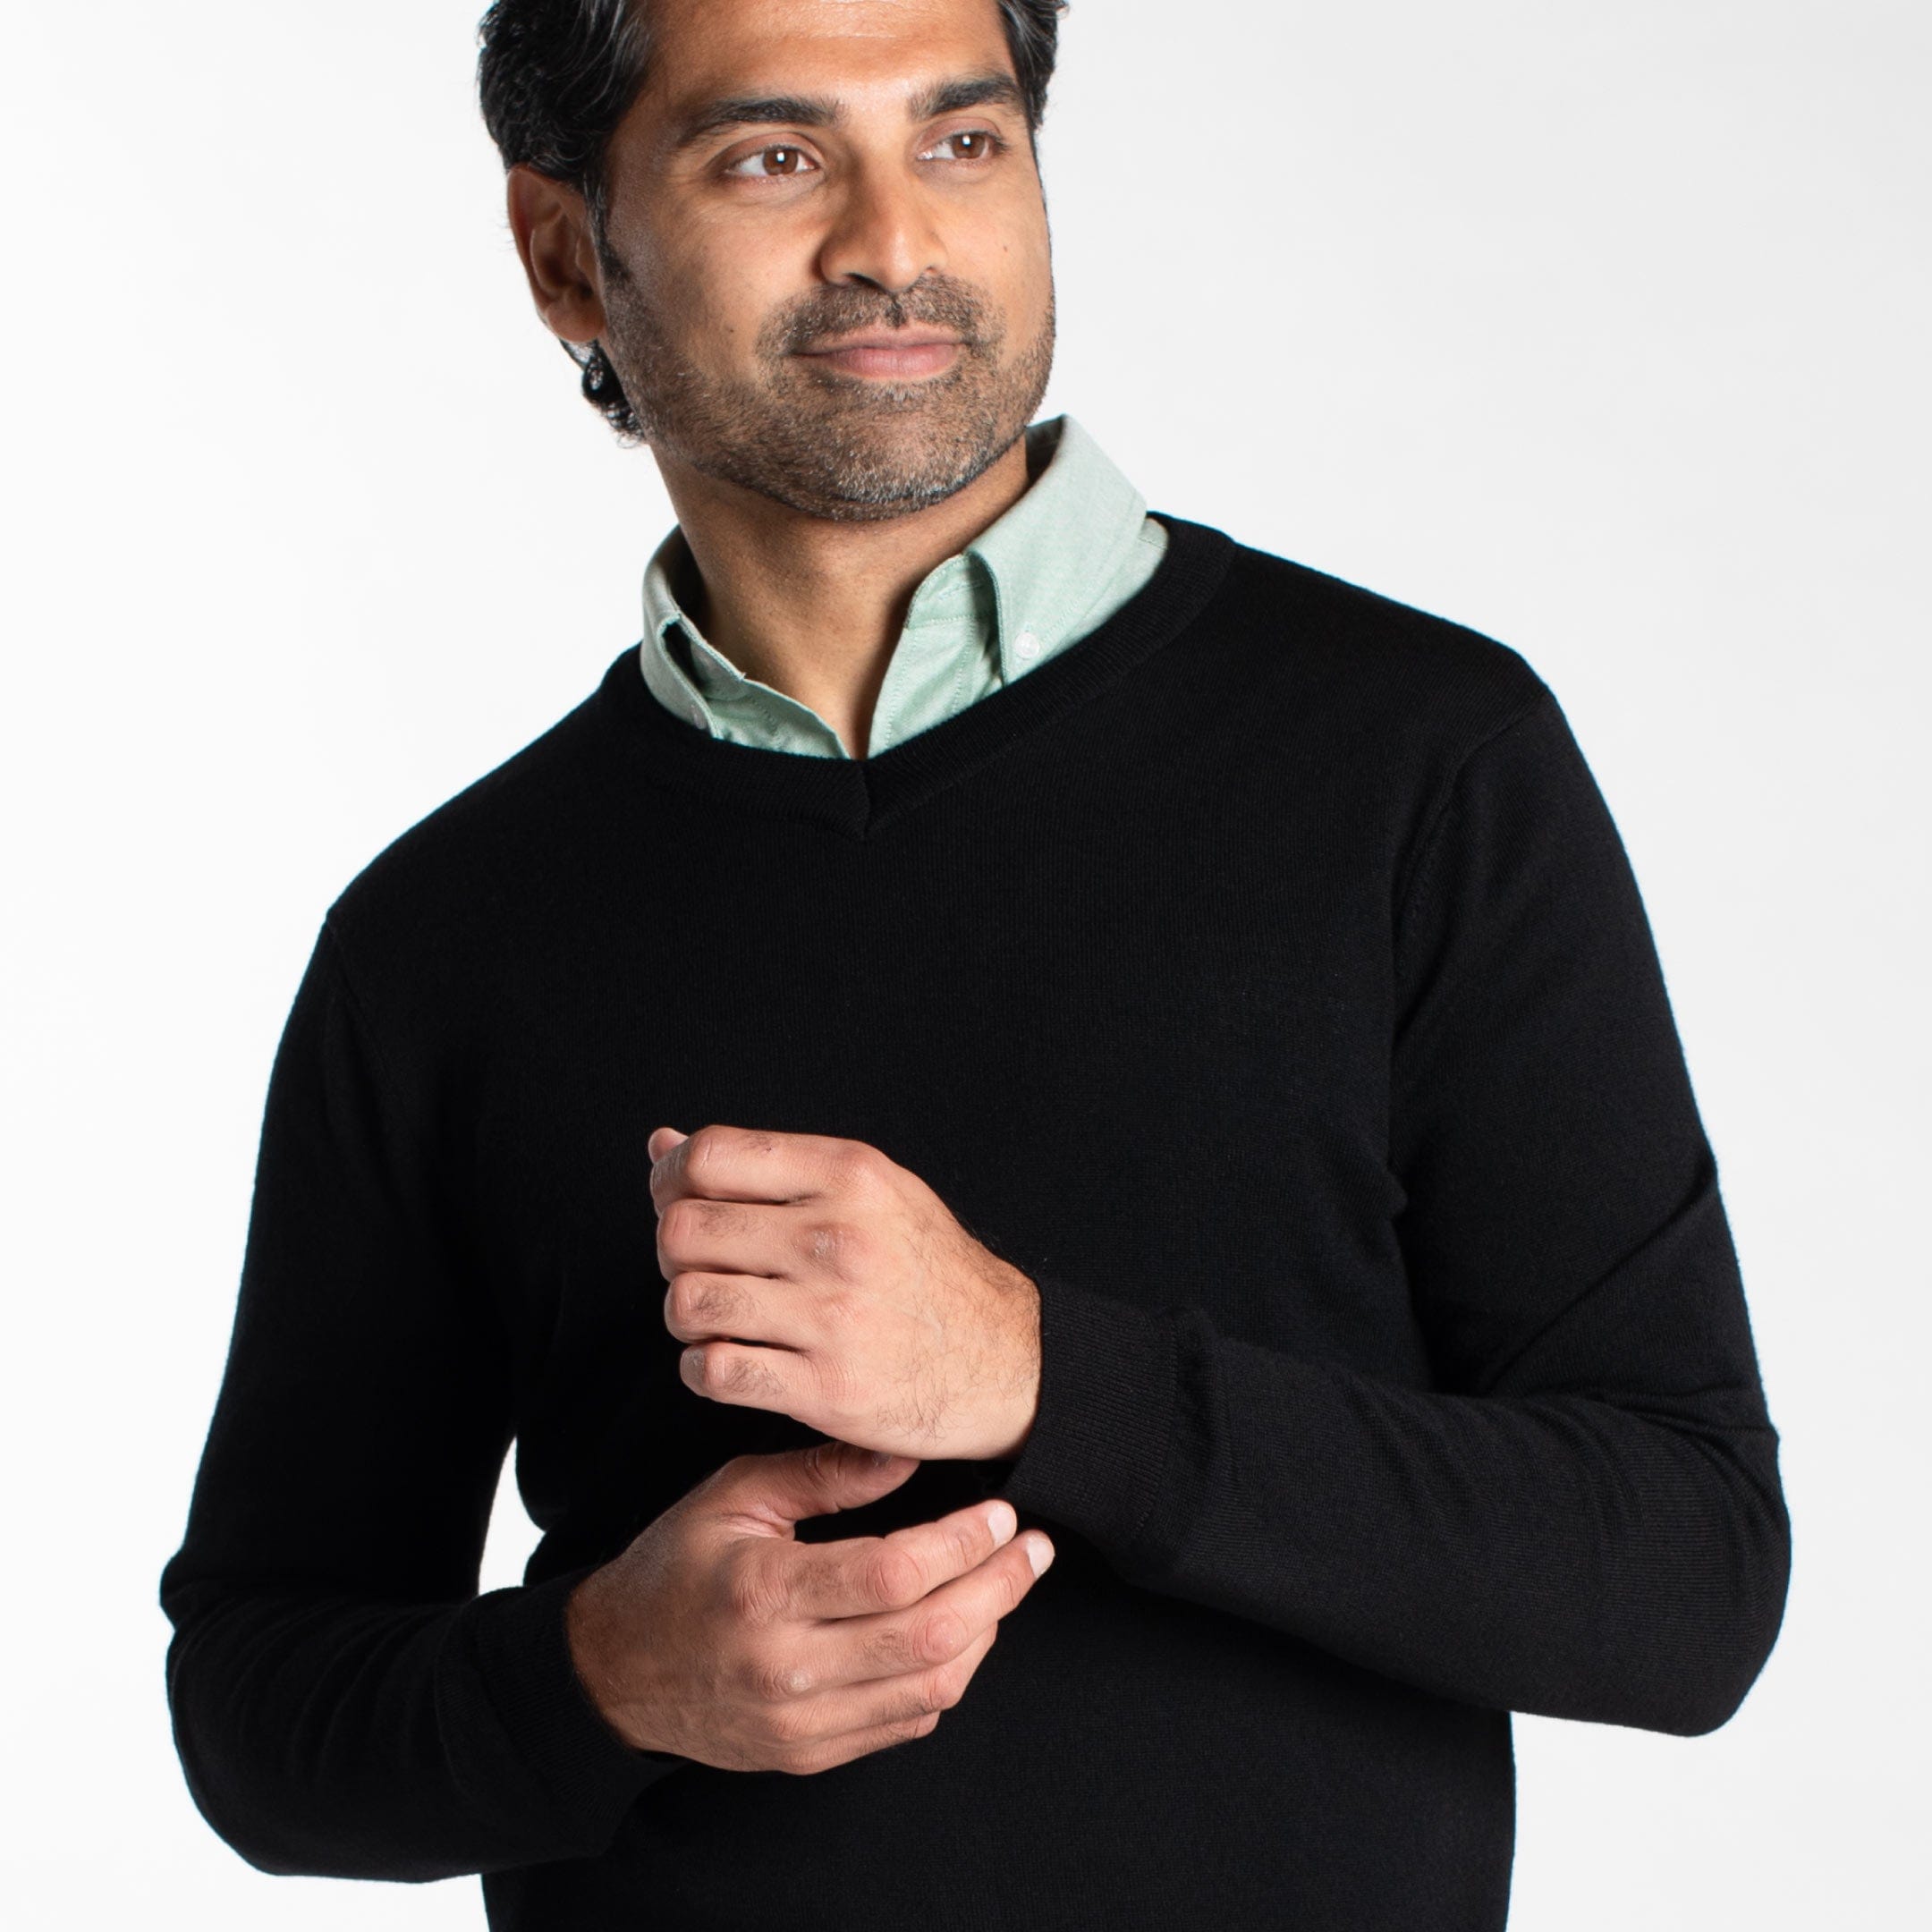 Buy Black Merino V-Neck Sweater for Short Men | Ash & Erie   Merino Wool Sweater